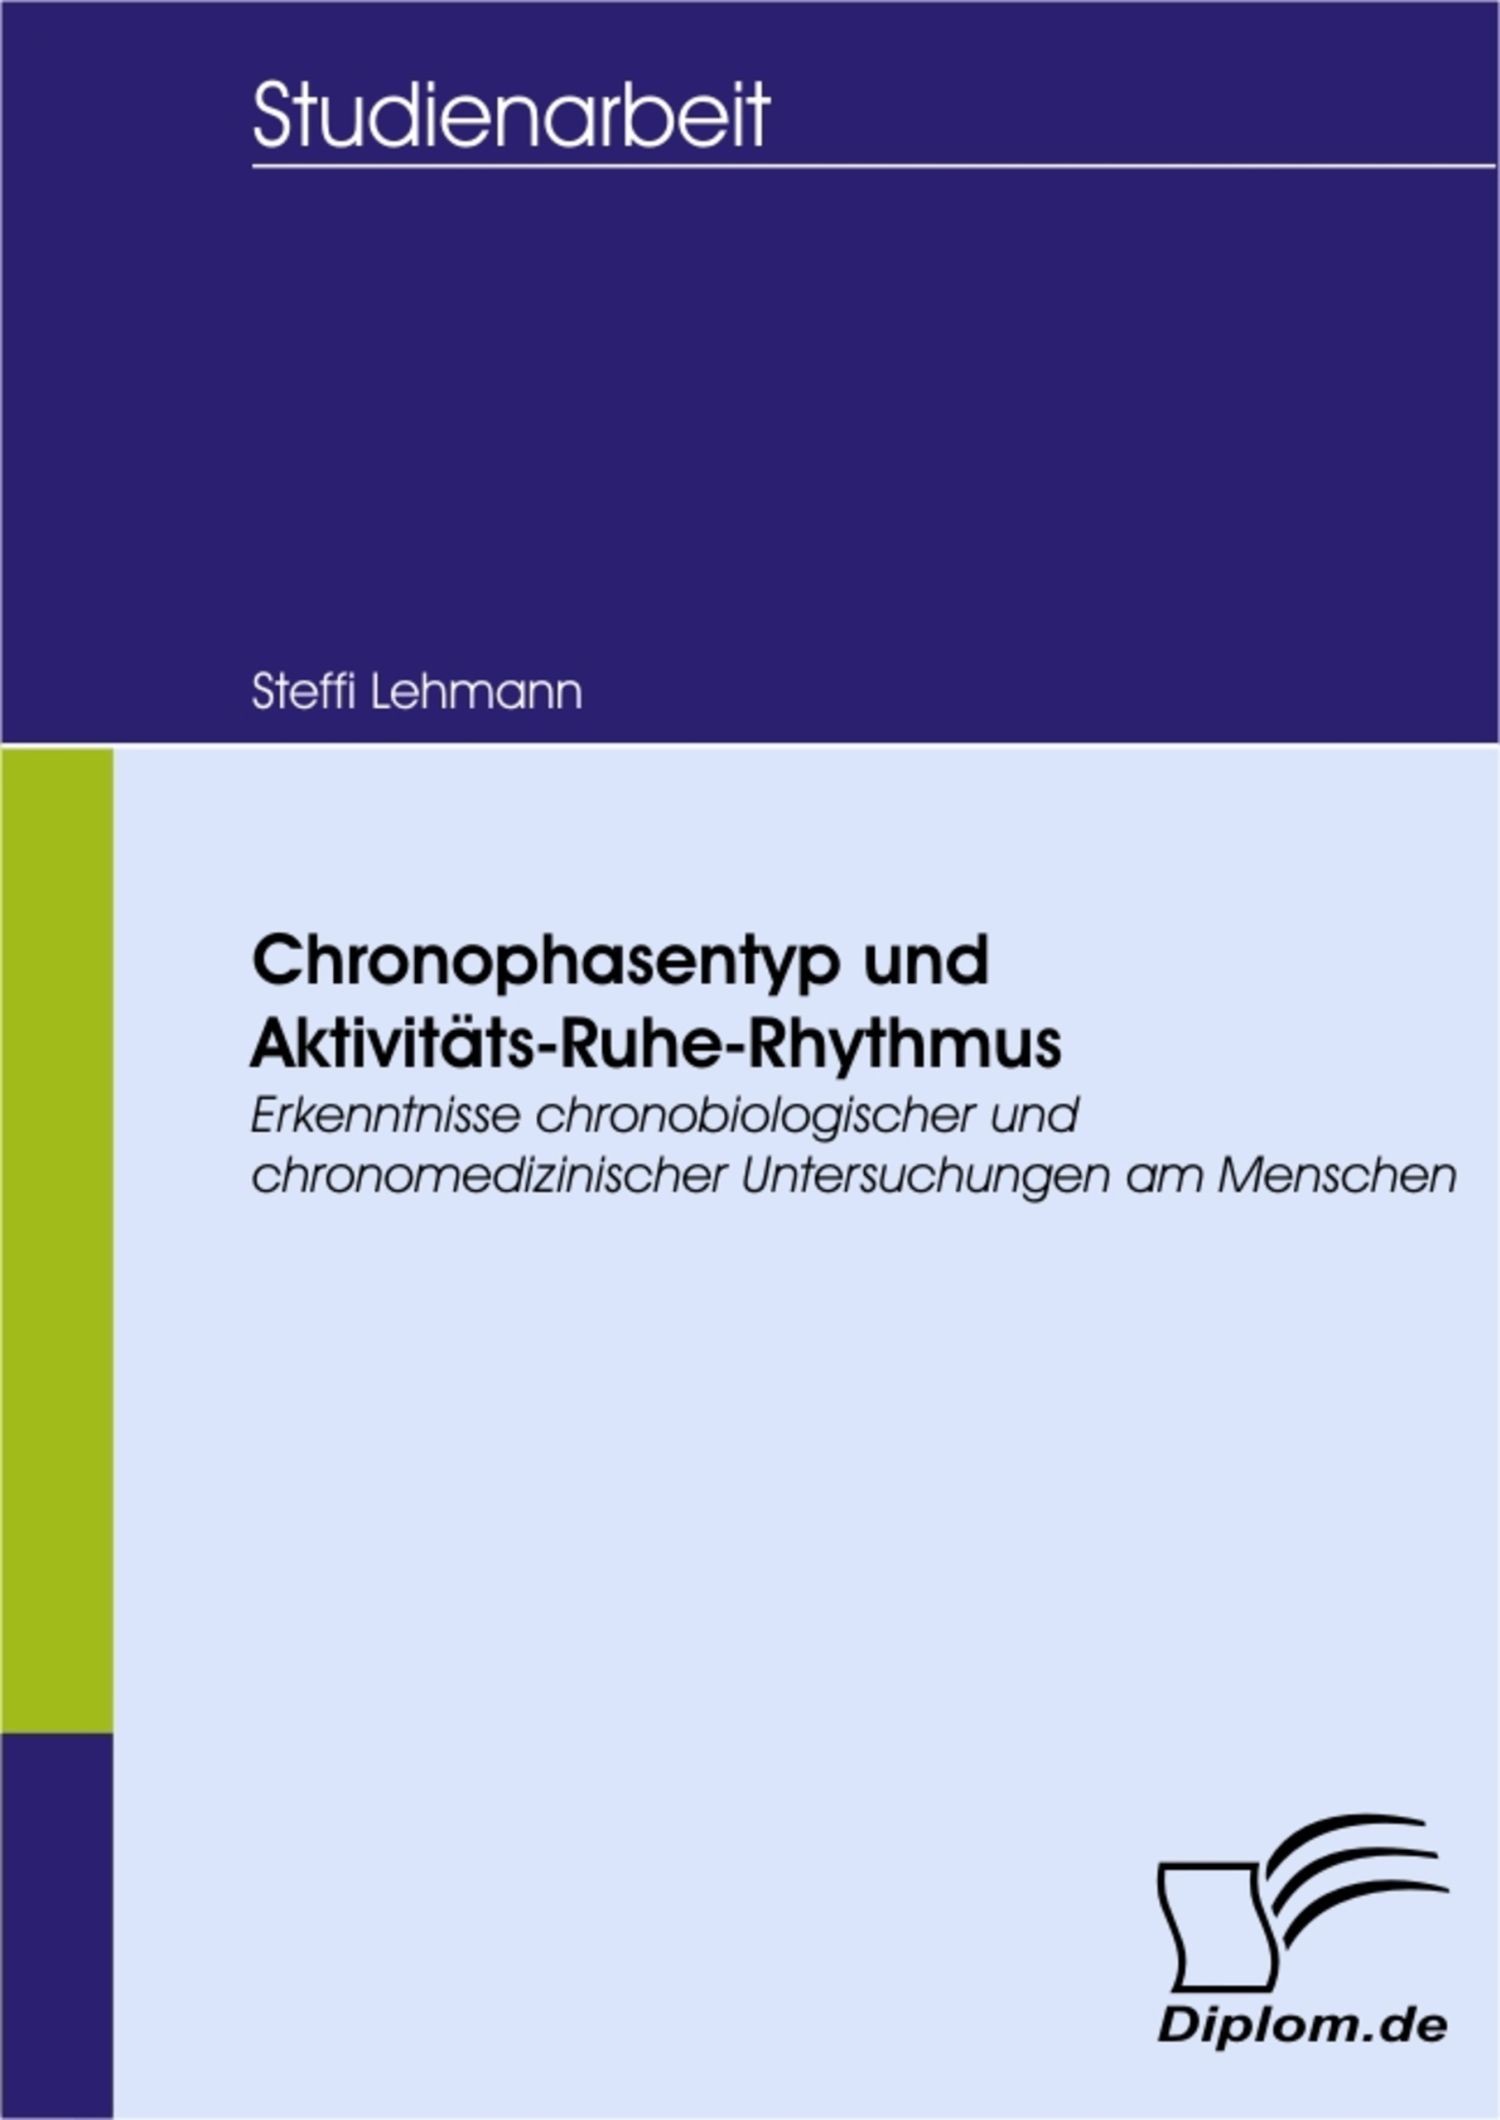 Chronophasentyp und Aktivitäts-Ruhe-Rhythmus: Erkenntnisse chronobiologischer und chronomedizinischer Untersuchungen am Menschen